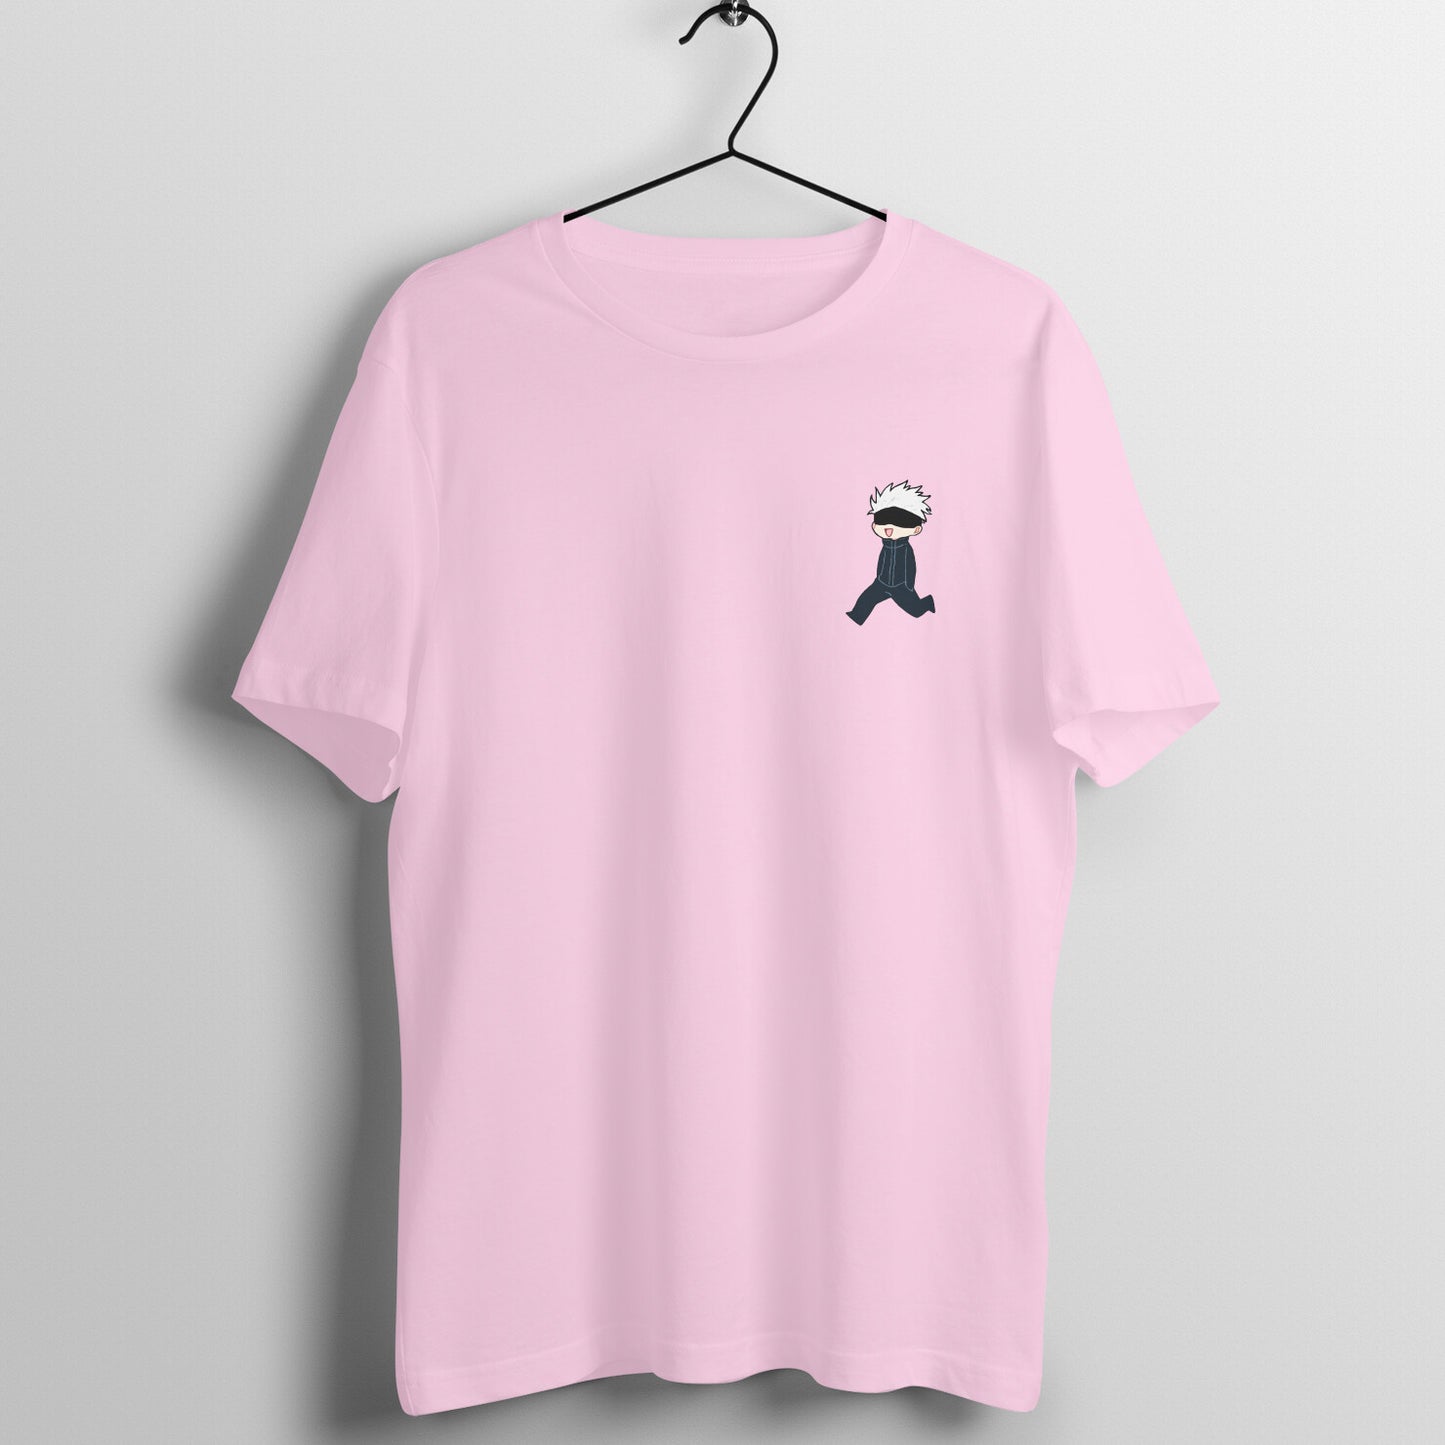 Men's Blind Walk Printed T-Shirt